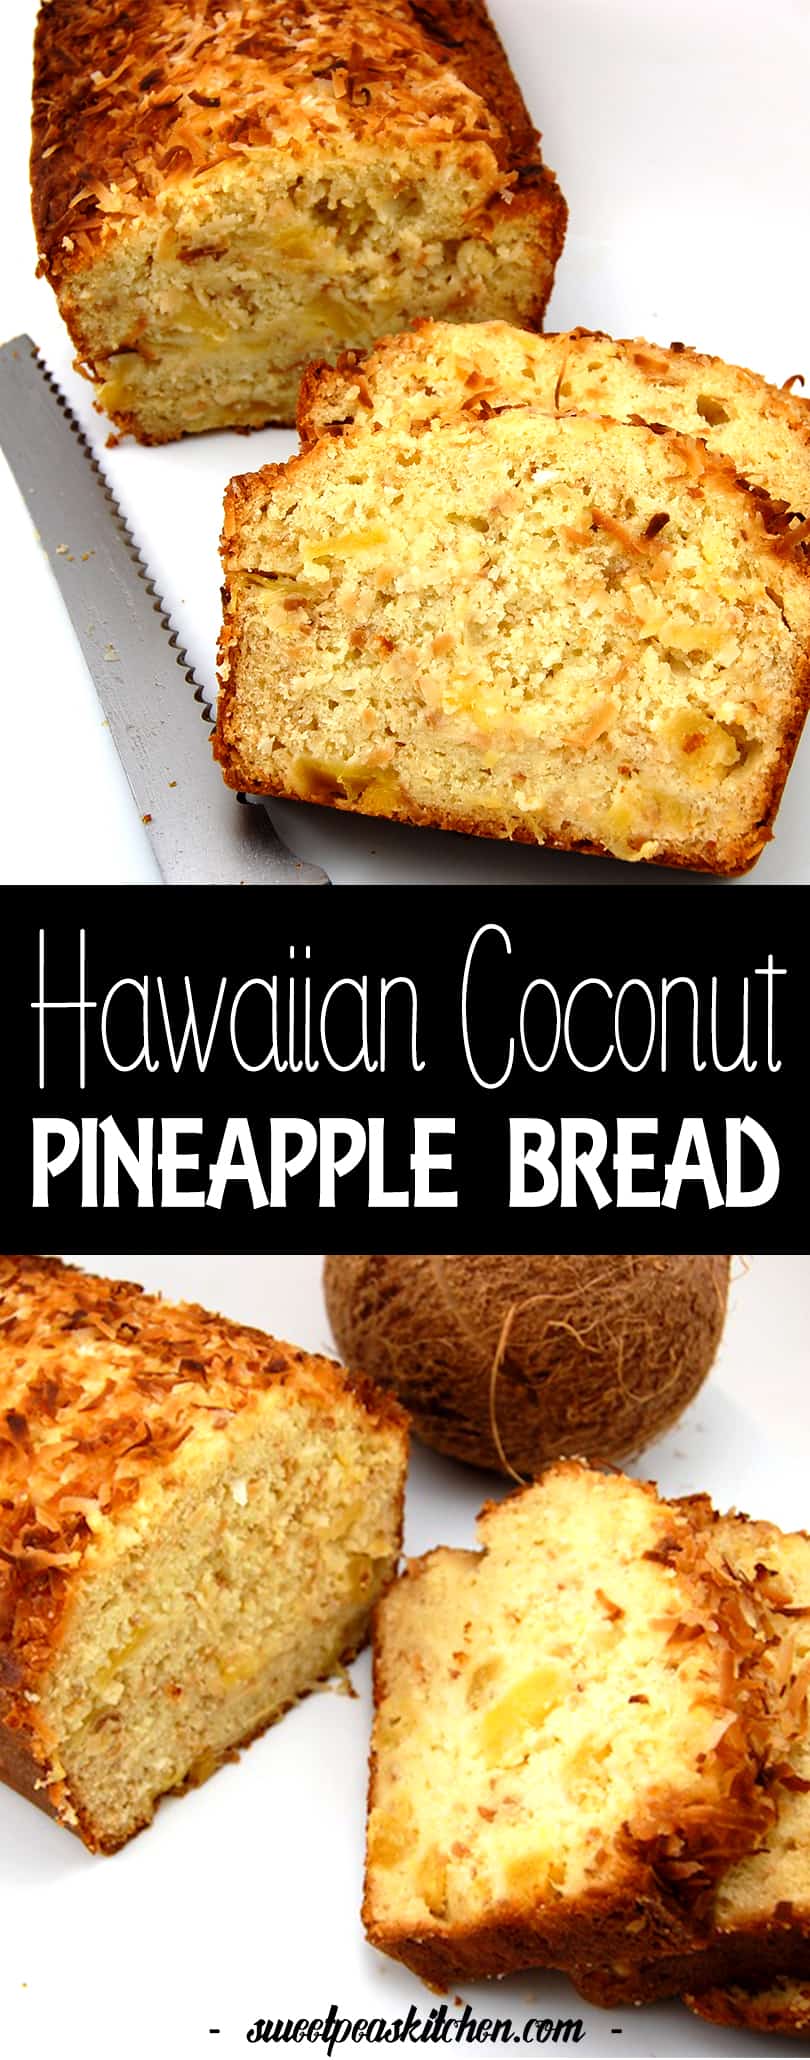 Pineapple coconut bread recipe - PIN Image